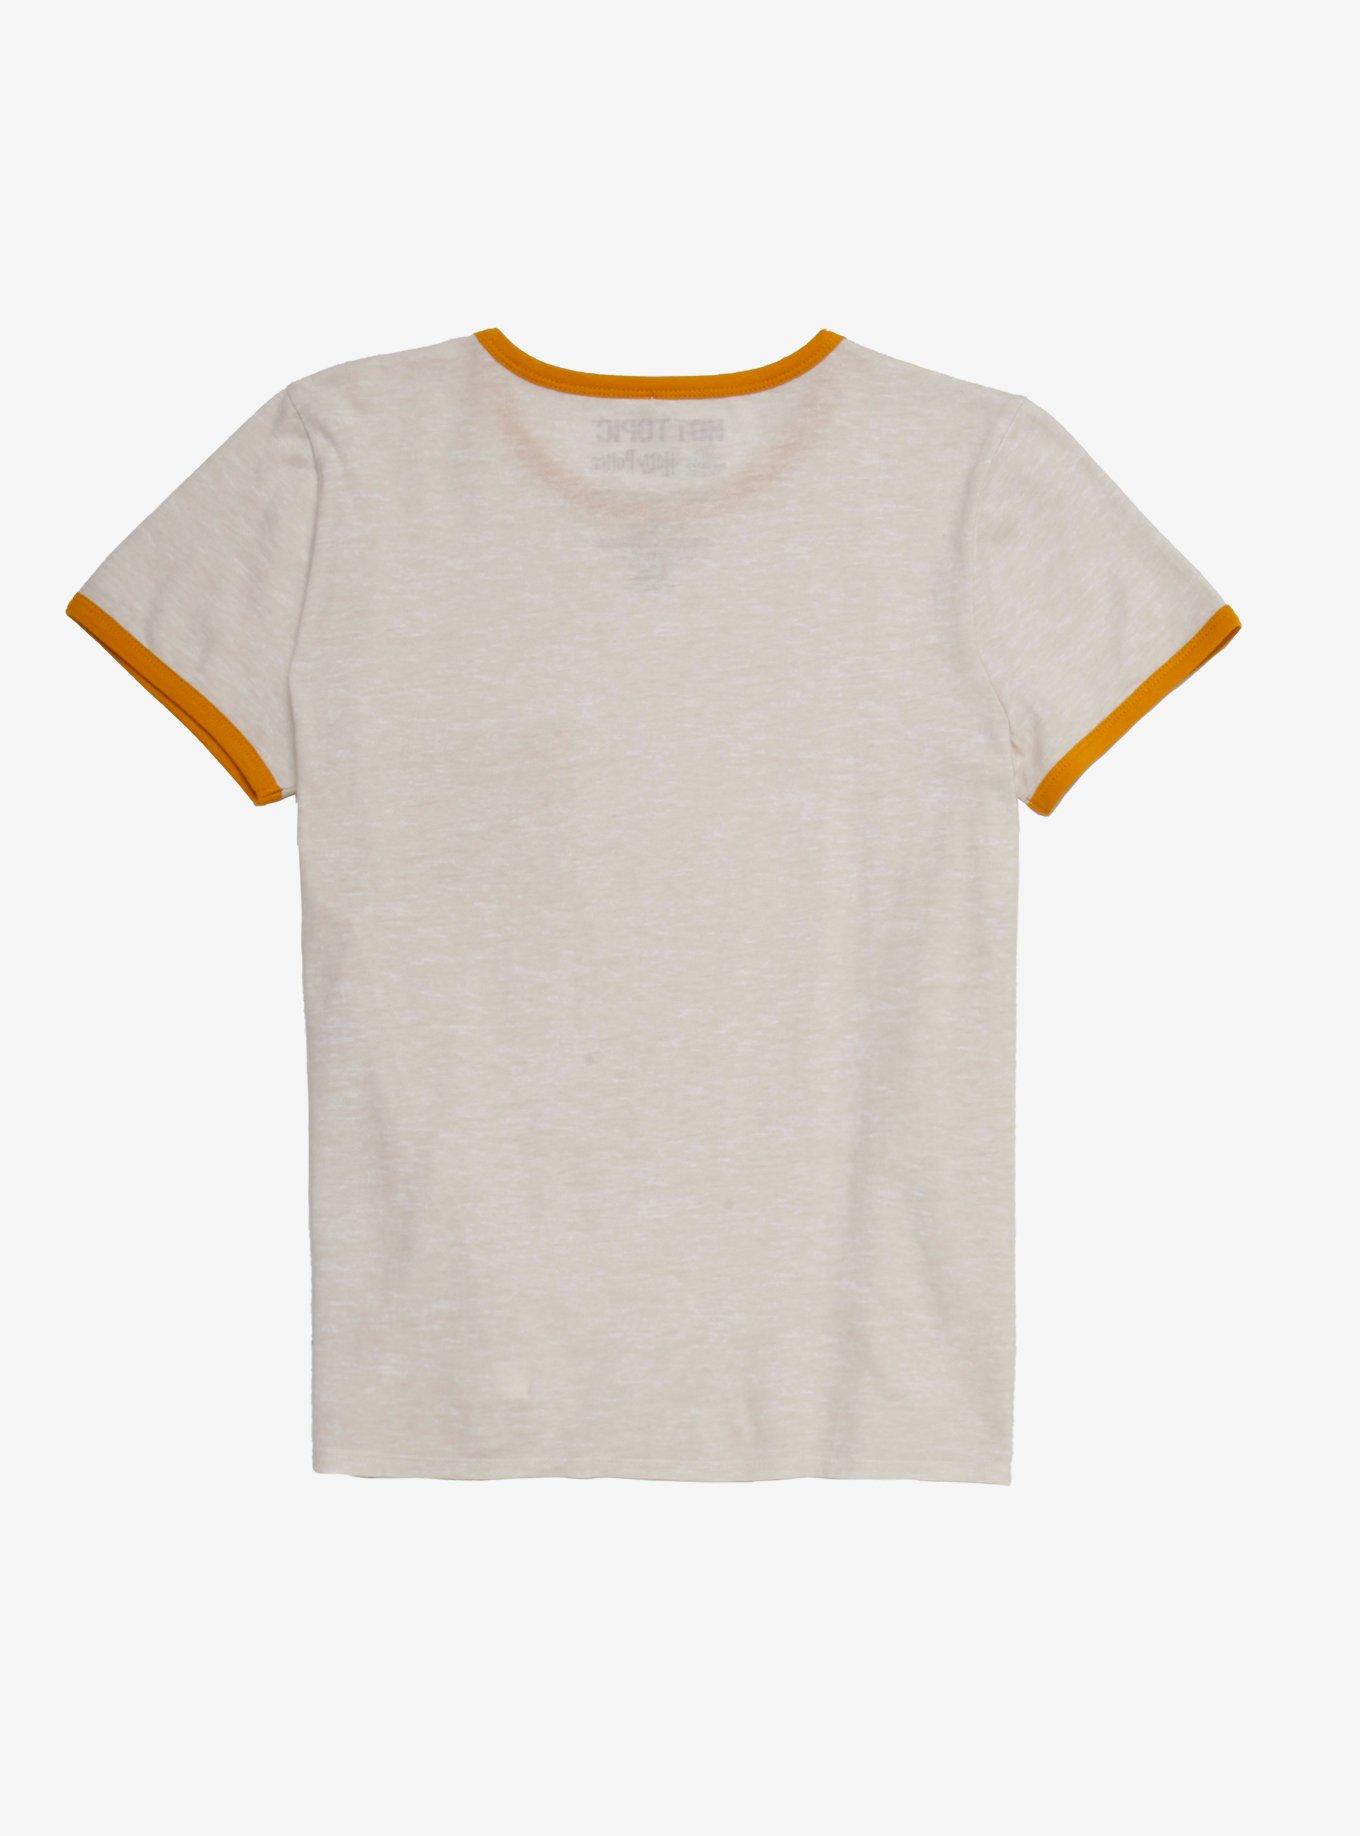 Harry Potter Hufflepuff Pocket Girls Ringer T-Shirt, YELLOW, alternate